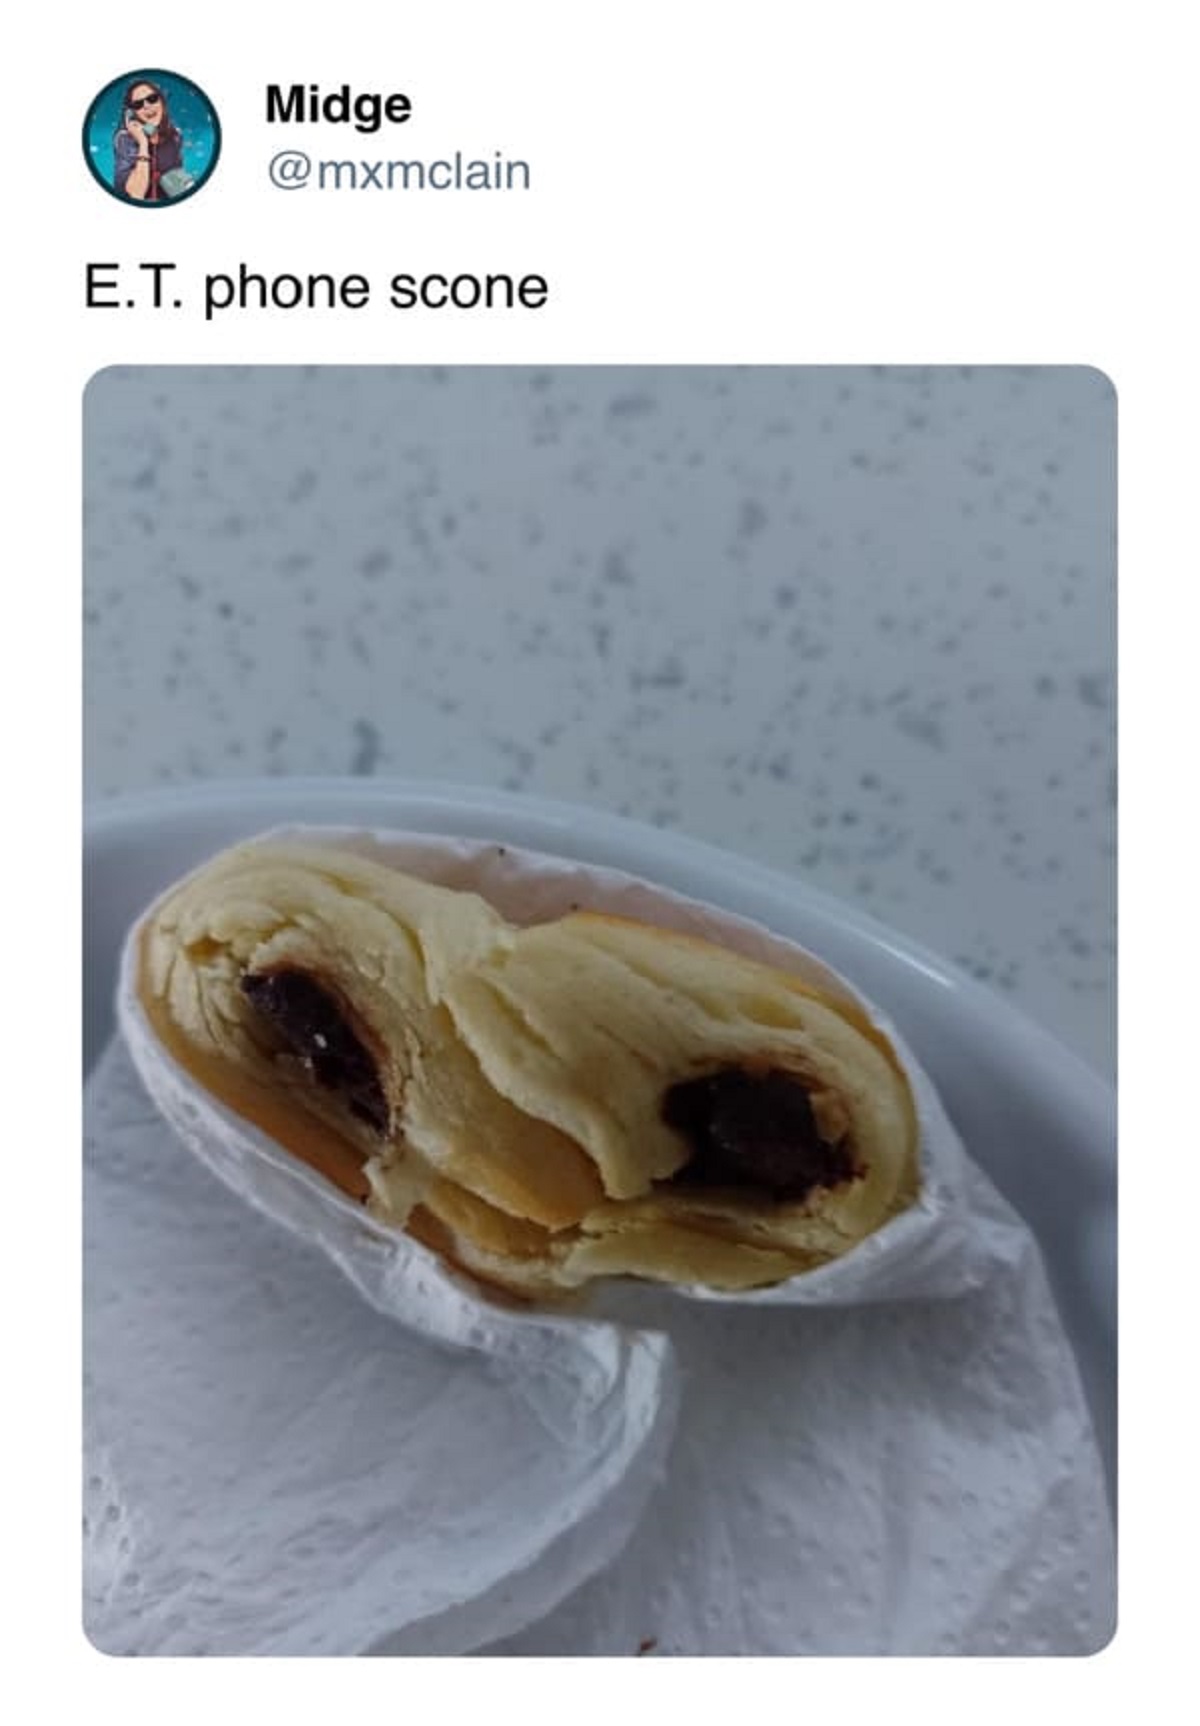 dessert - Midge E.T. phone scone